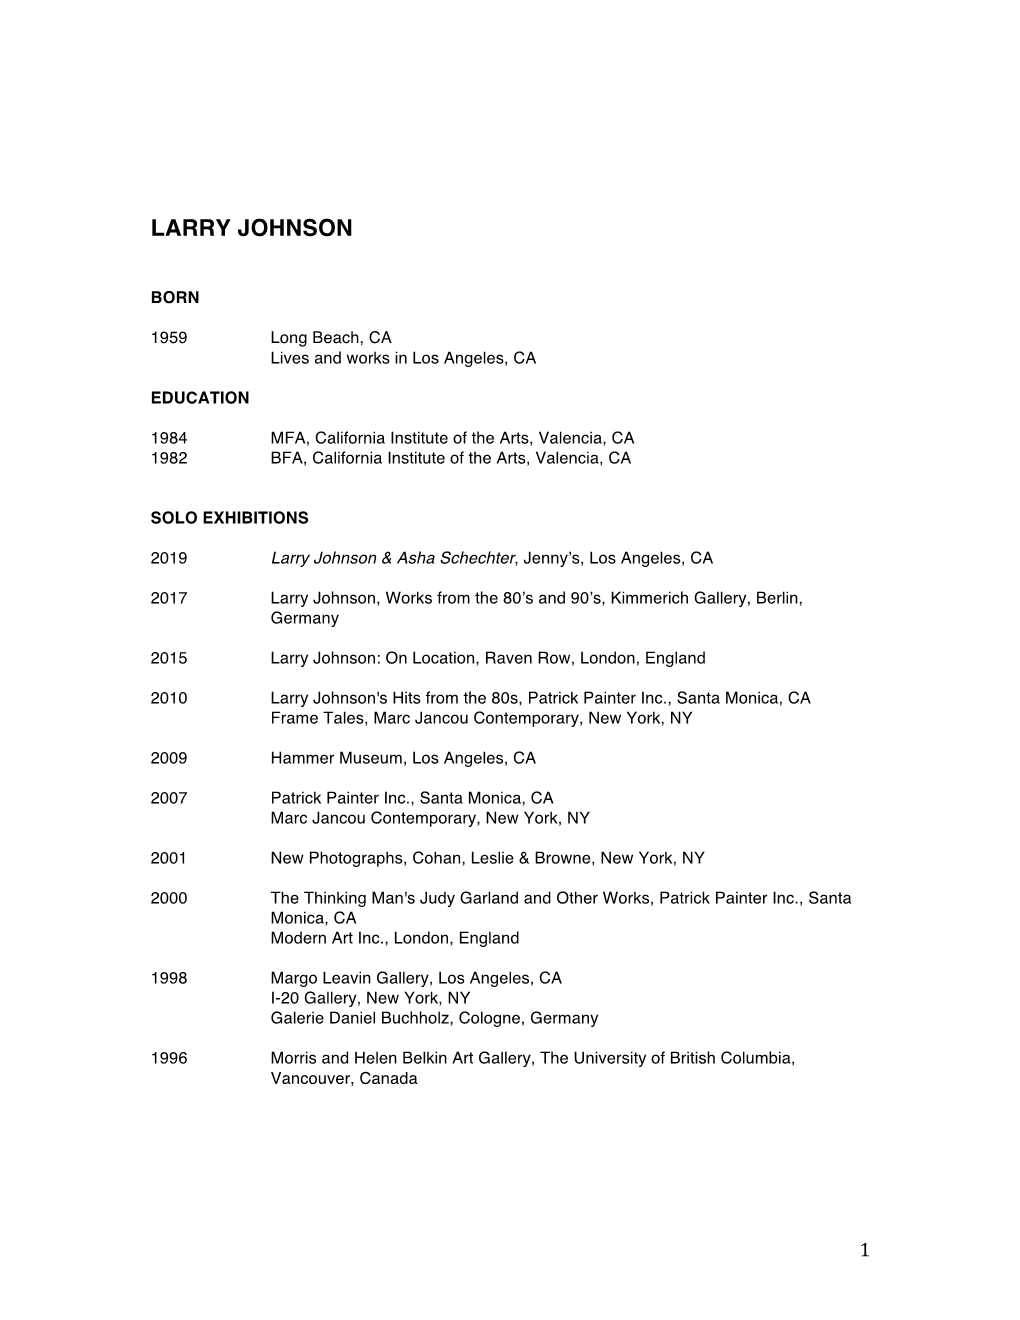 Larry Johnson Full